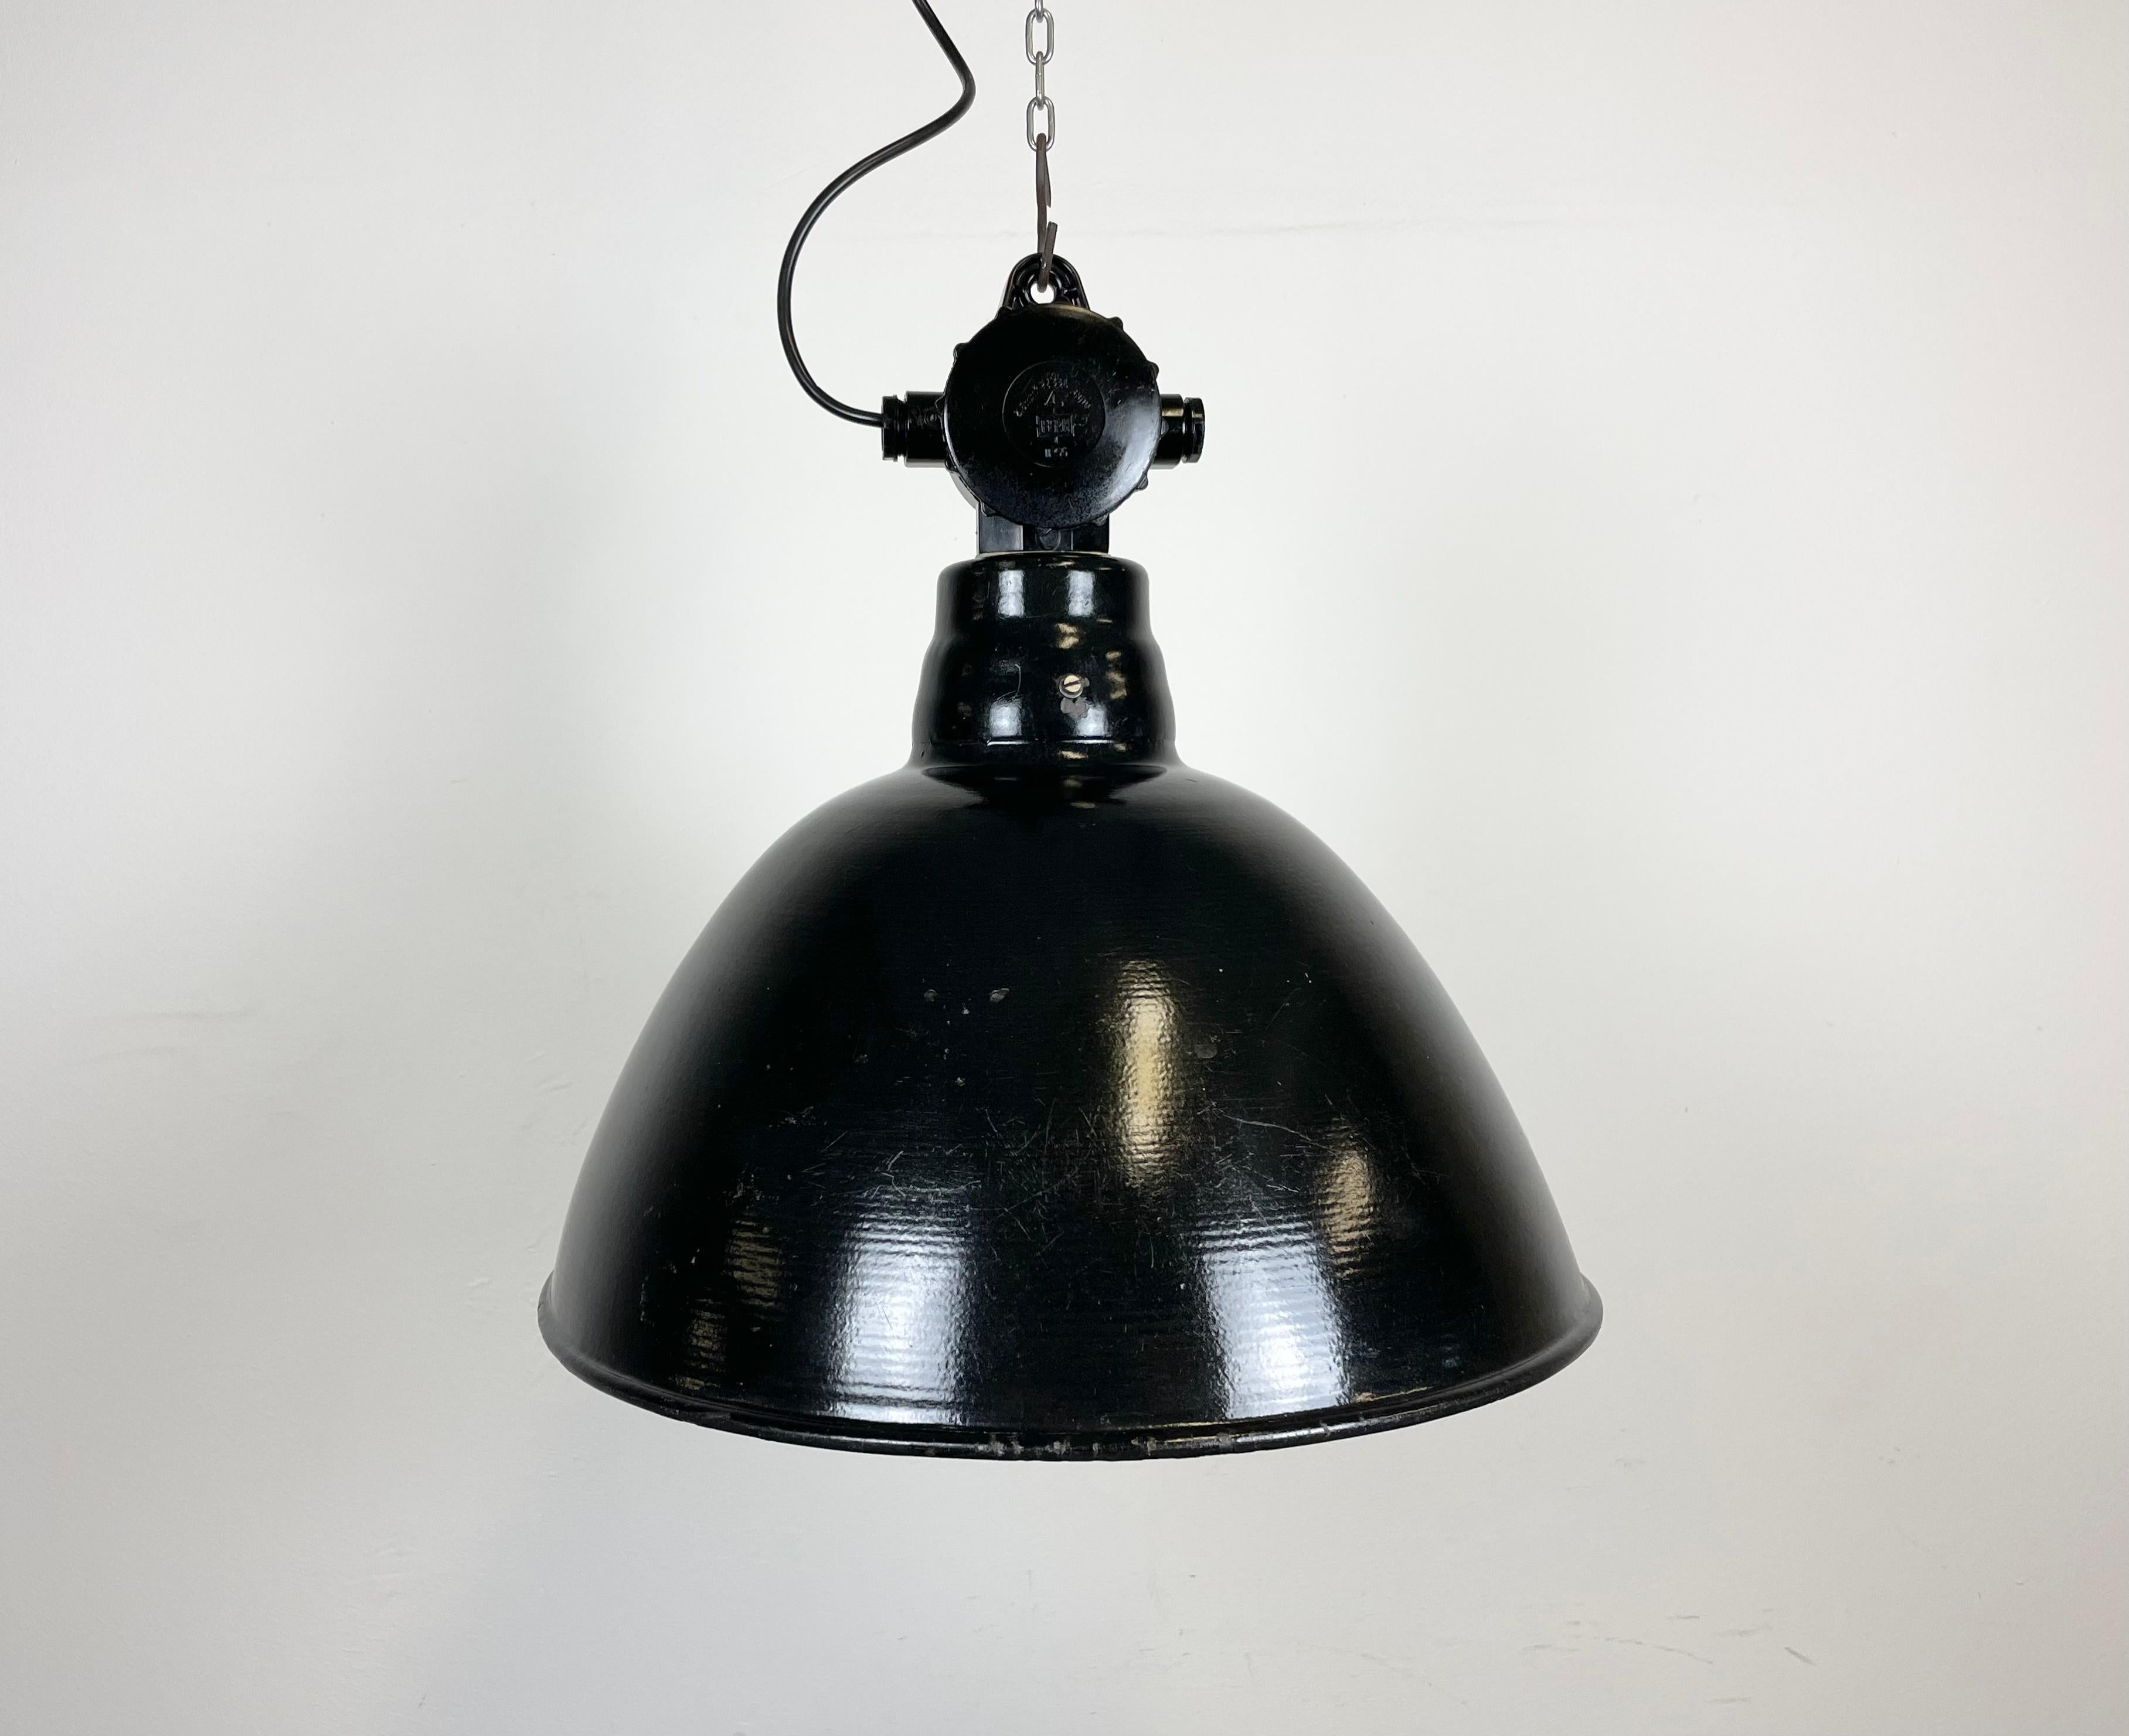 Lampe d'usine en émail industriel fabriquée par Lbd Veb Leuchtenbau Dresden en Allemagne de l'Est dans les années 1950.Elle présente un abat-jour en émail noir avec un intérieur en émail blanc et un dessus en bakélite.La douille en porcelaine